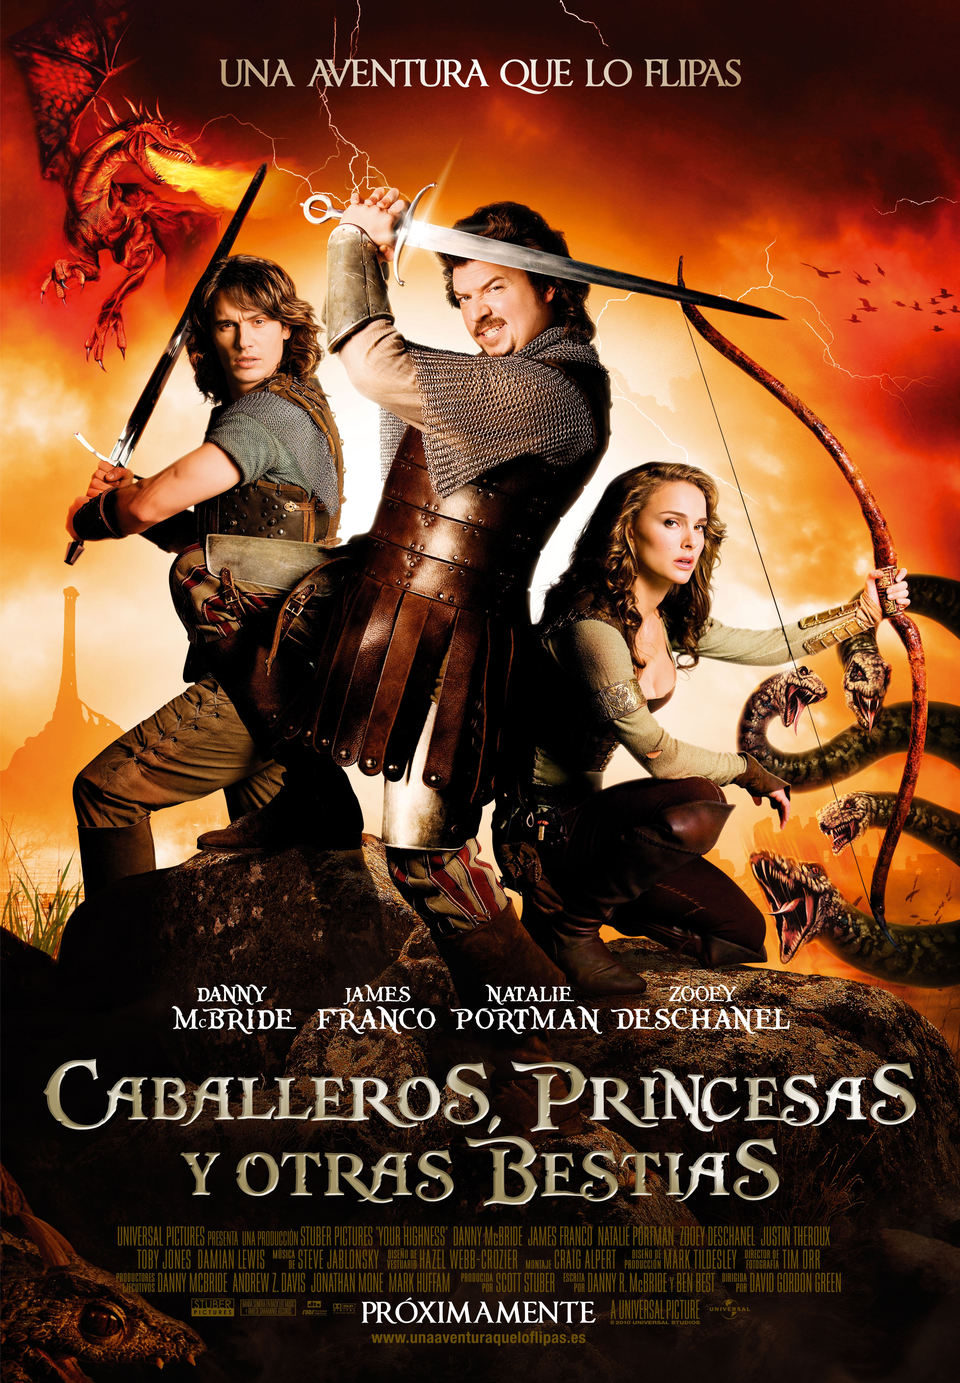 Cartel de Caballeros, princesas y otras bestias - España